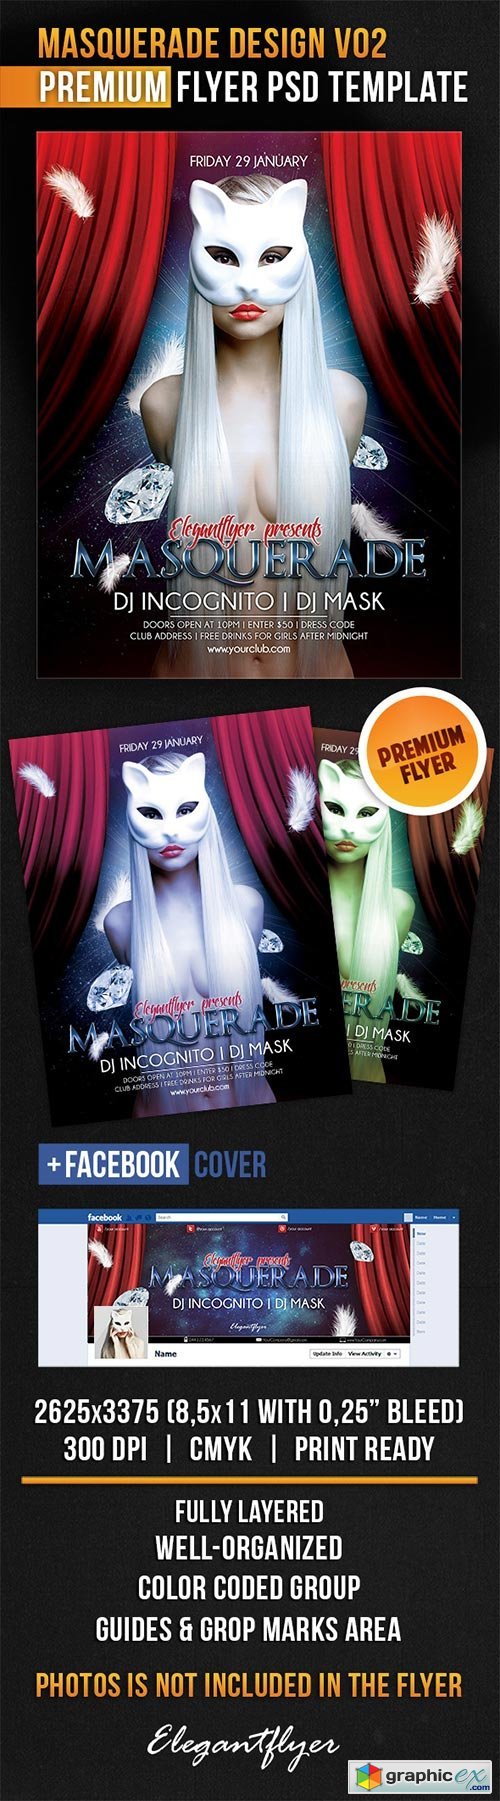 Masquerade Design V02 Flyer PSD Template + Facebook Cover